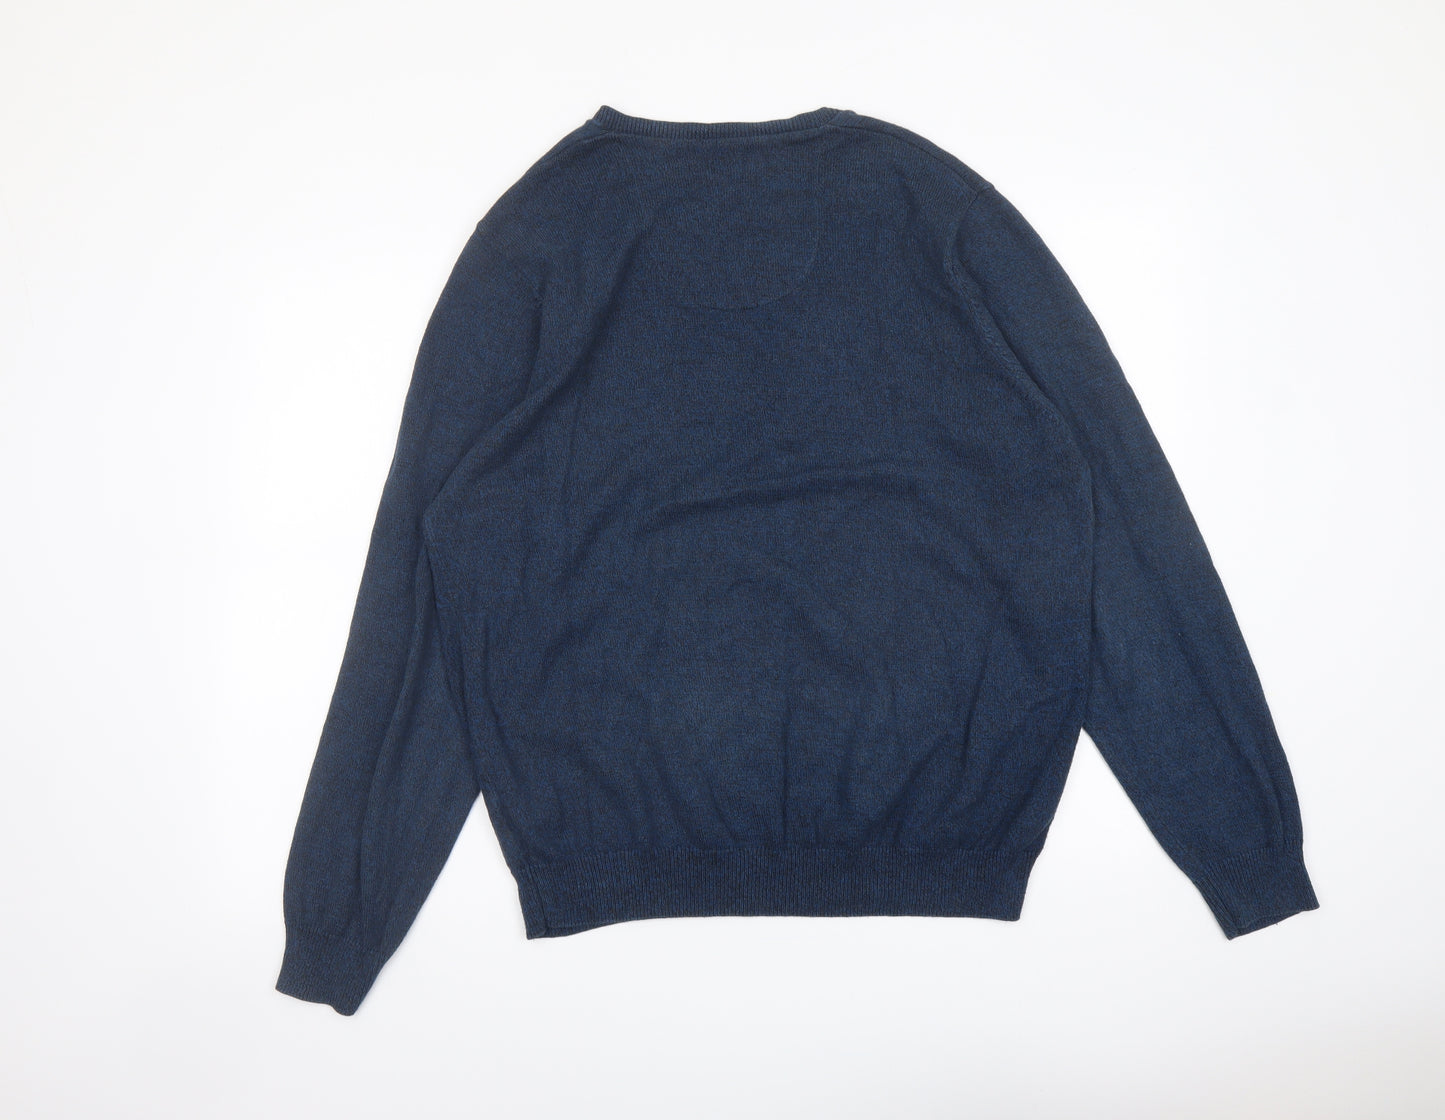 Marks and Spencer Mens Blue V-Neck Cotton Pullover Jumper Size L Long Sleeve